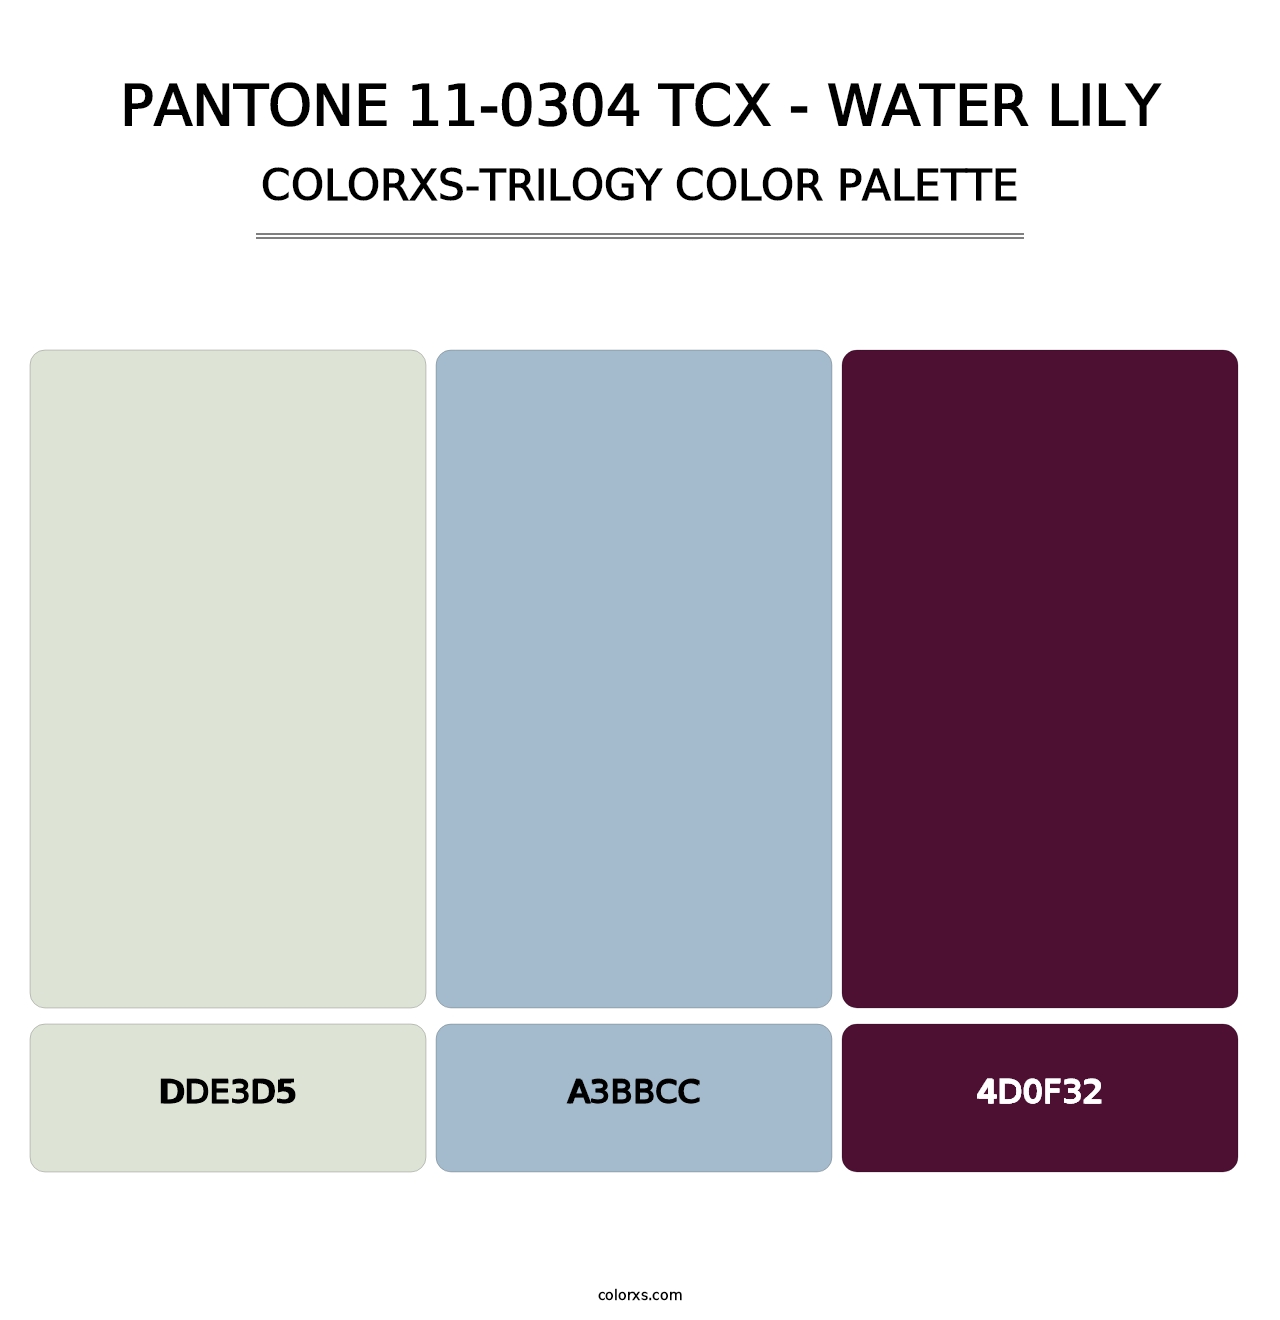 PANTONE 11-0304 TCX - Water Lily - Colorxs Trilogy Palette